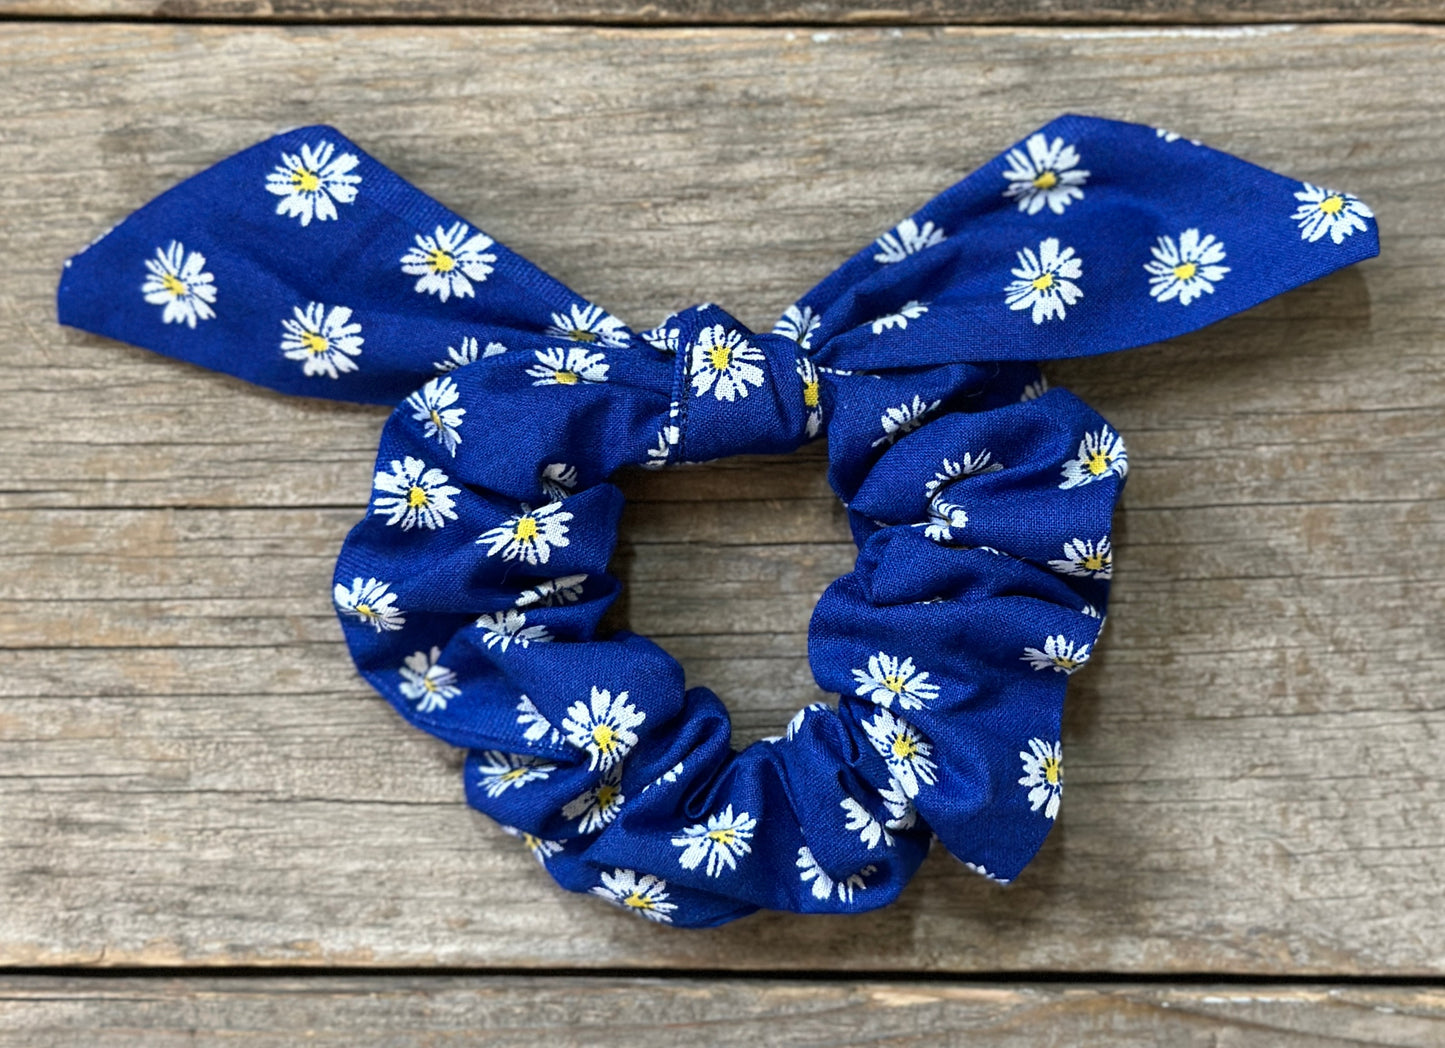 Spring Fling Hair Tie/Scrunchie Set of 3